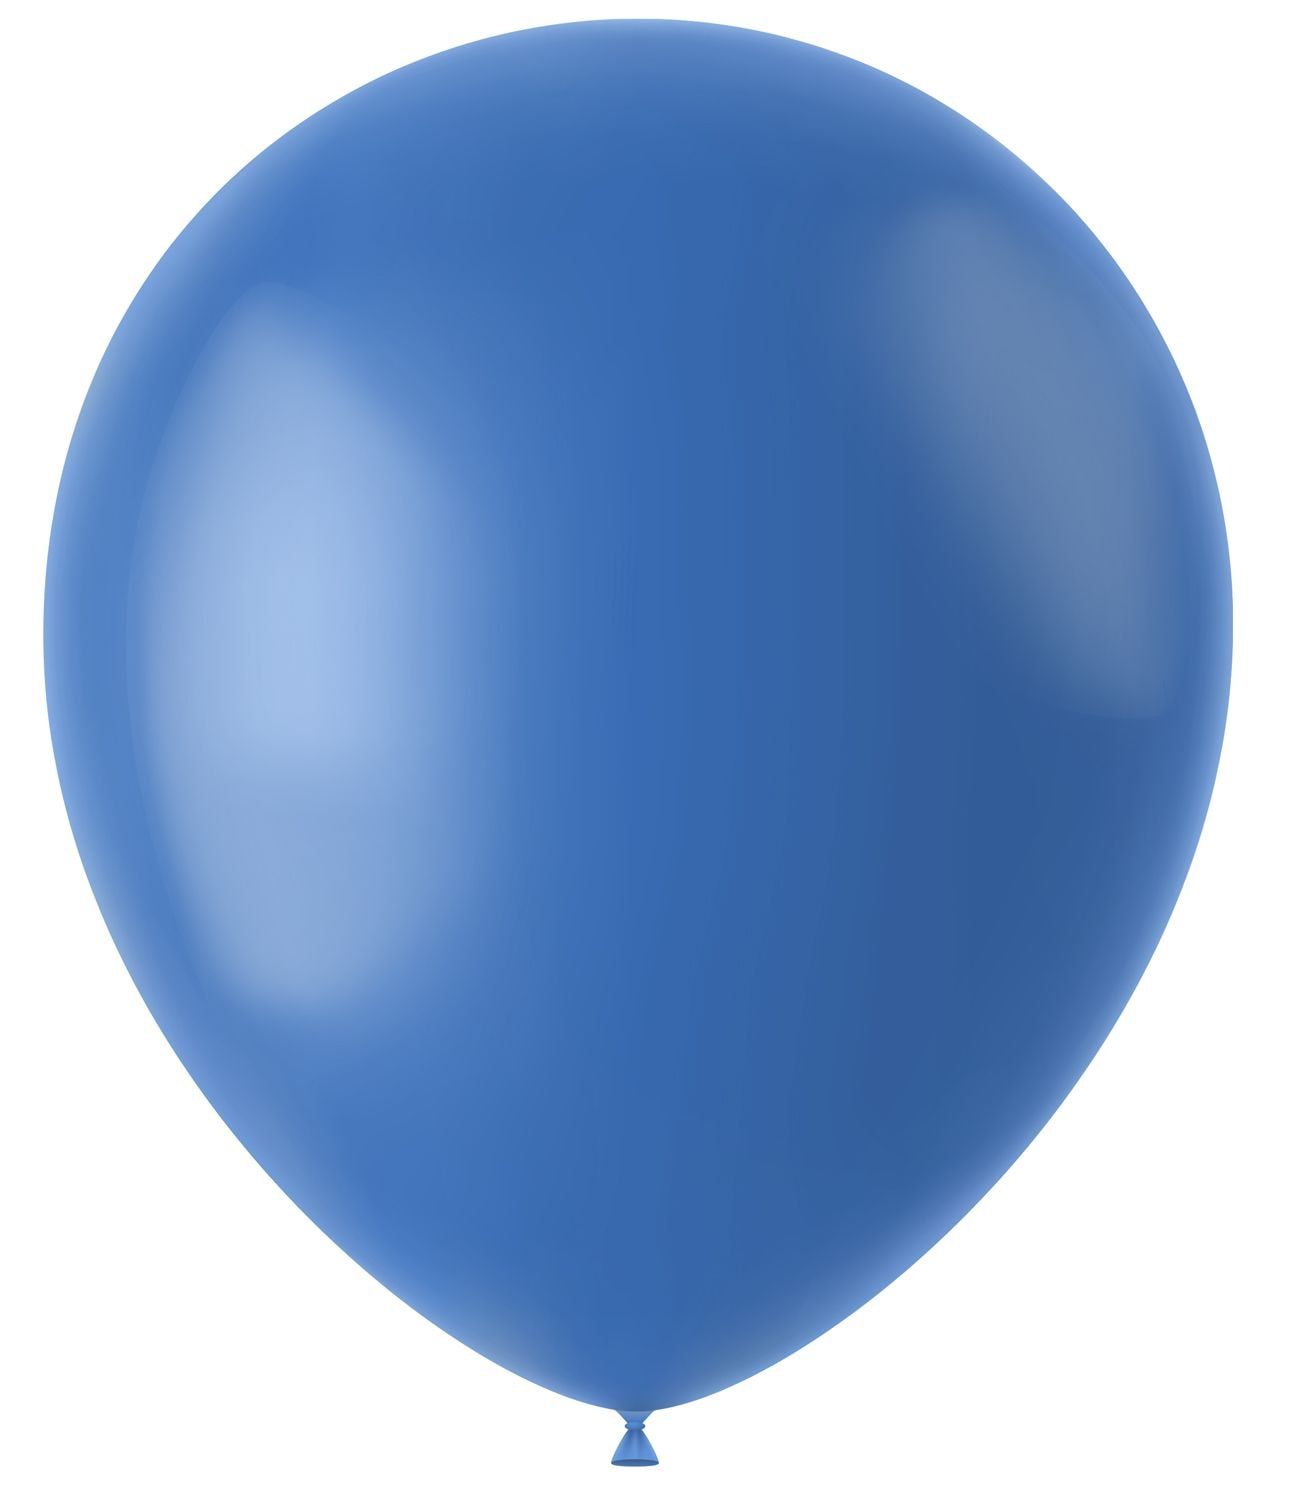 Dutch blauwe mat ballonnen 100 stuks